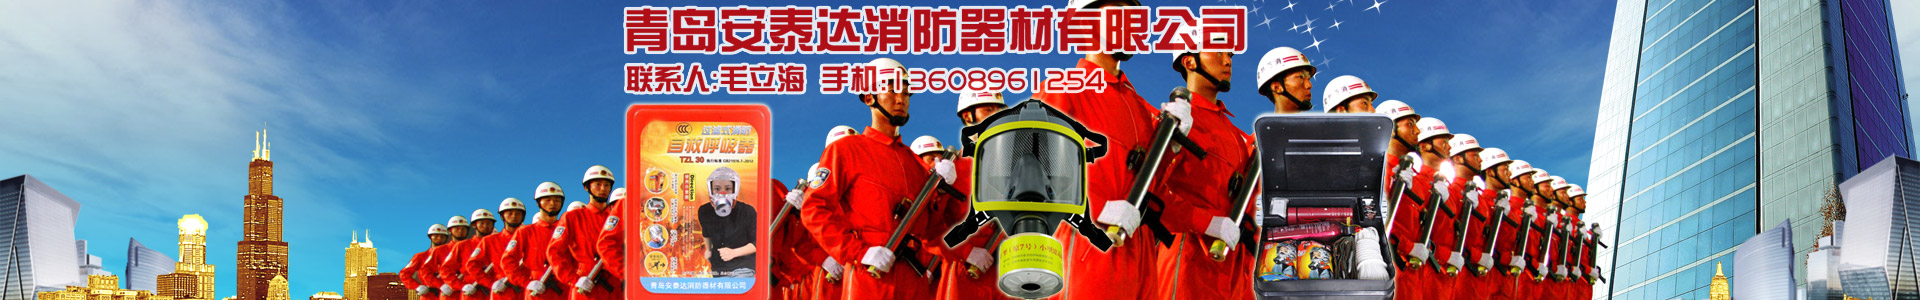 22馬力消防泵-消防泵系列-青島安泰達消防器材有限公司-